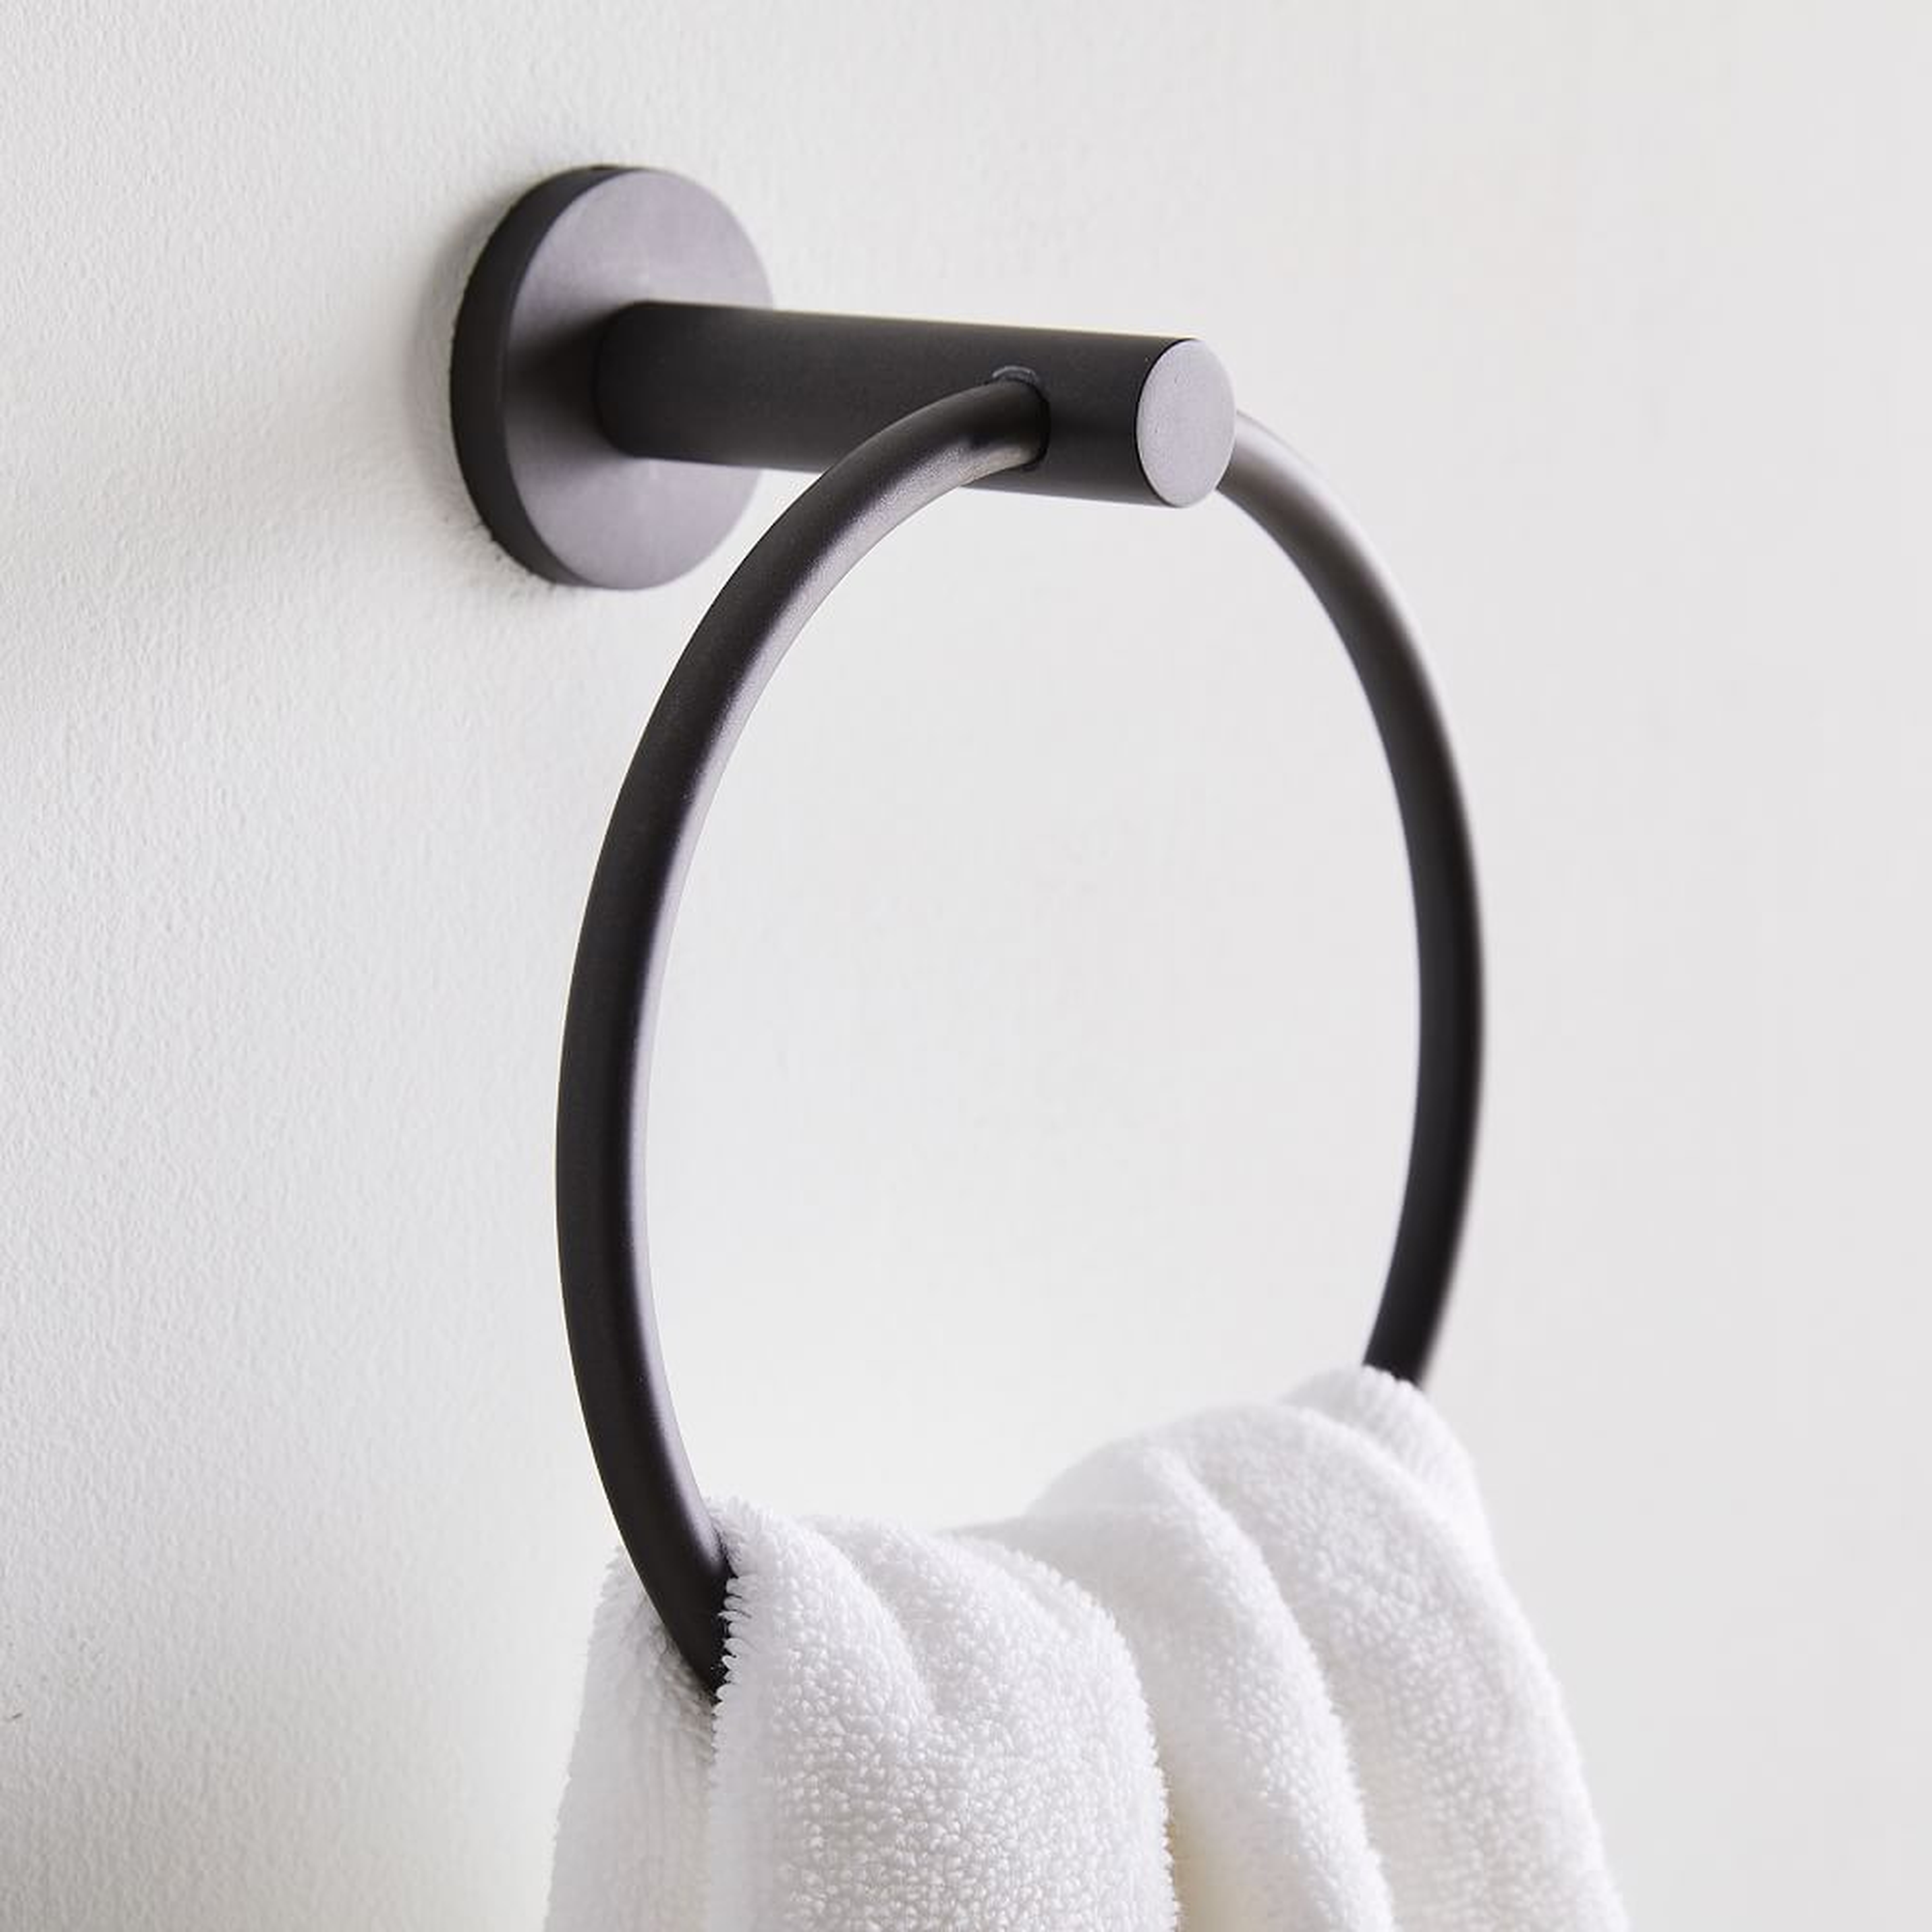 Modern Overhang Bath Hardware, Towel Ring, Matte Black - West Elm